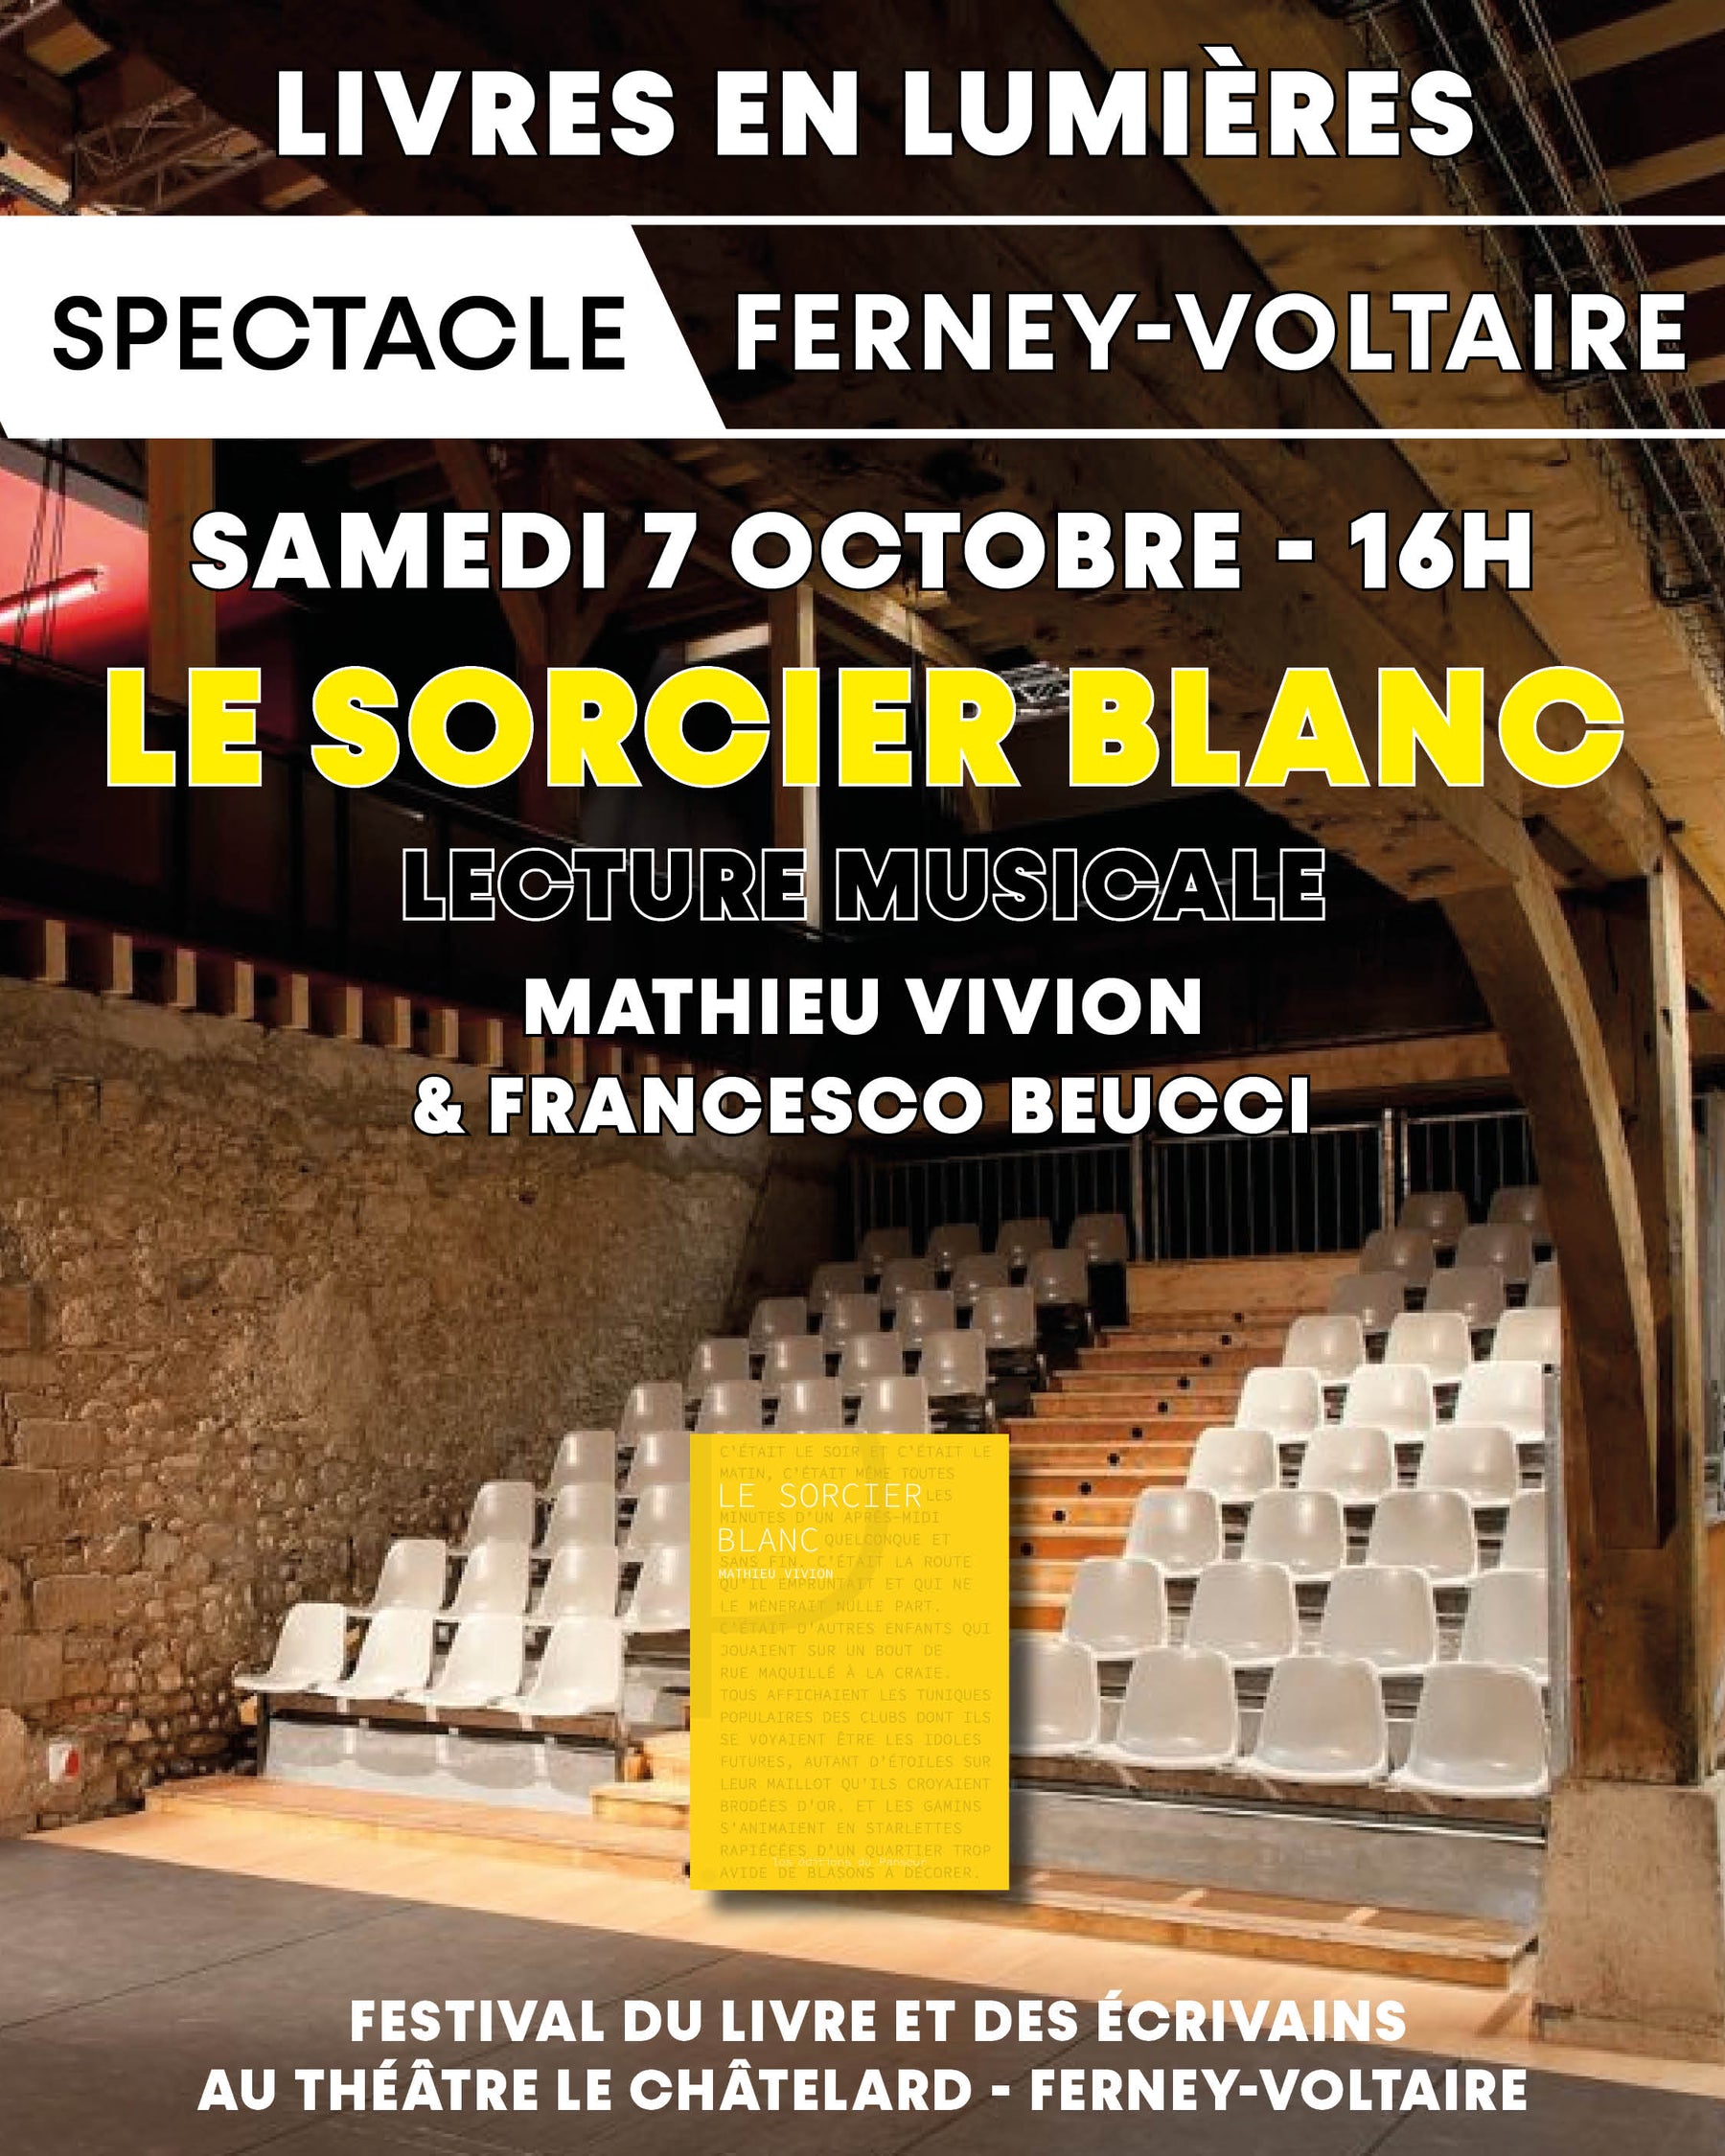 Le Samedi 7 octobre, 16h, Spectacle lecture musicale Le Sorcier Blanc de Mathieu Vivion Livres en Lumières à Ferney-Voltaire au théâtre du Châtelard